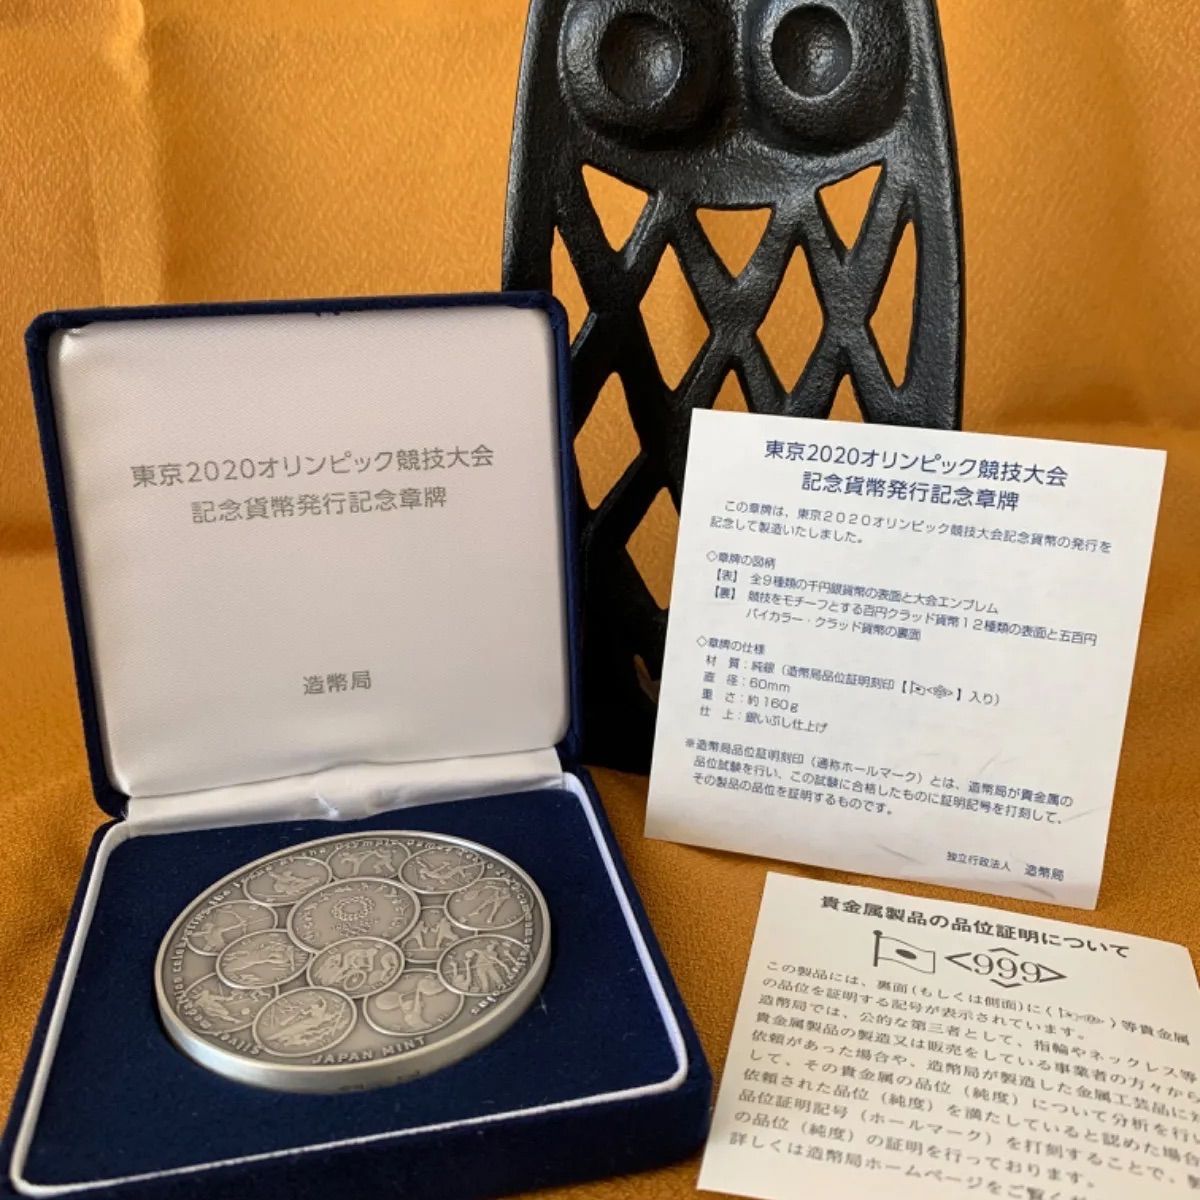 東京2020オリンピック競技大会 記念貨幣発行記念章牌 - コレクション